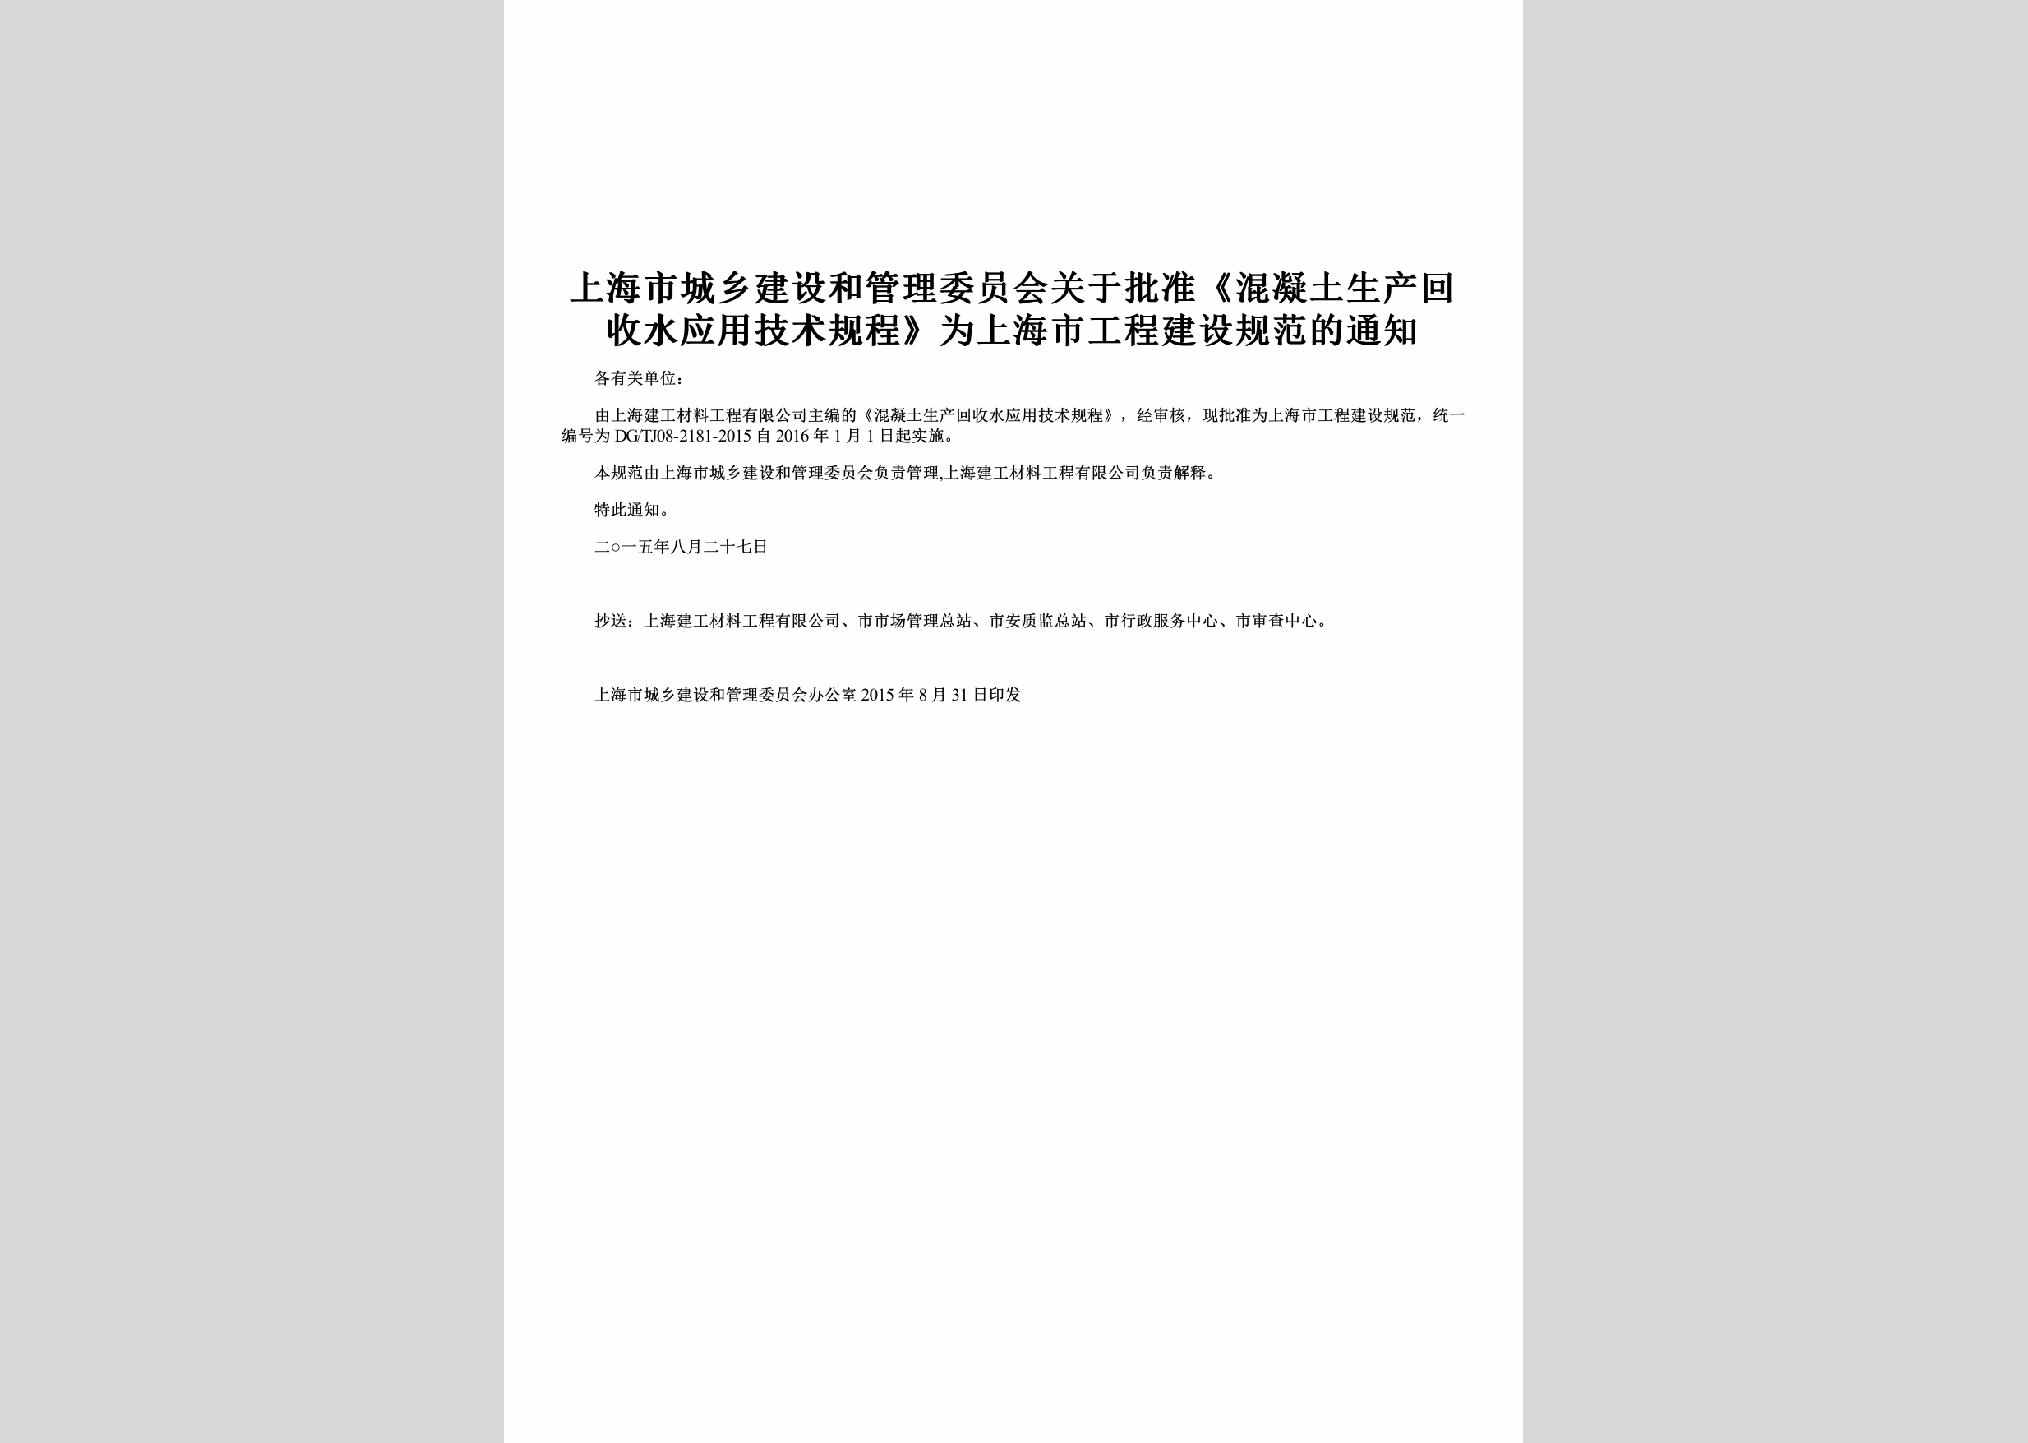 SH-NTHSGCTZ-2015：关于批准《混凝土生产回收水应用技术规程》为上海市工程建设规范的通知